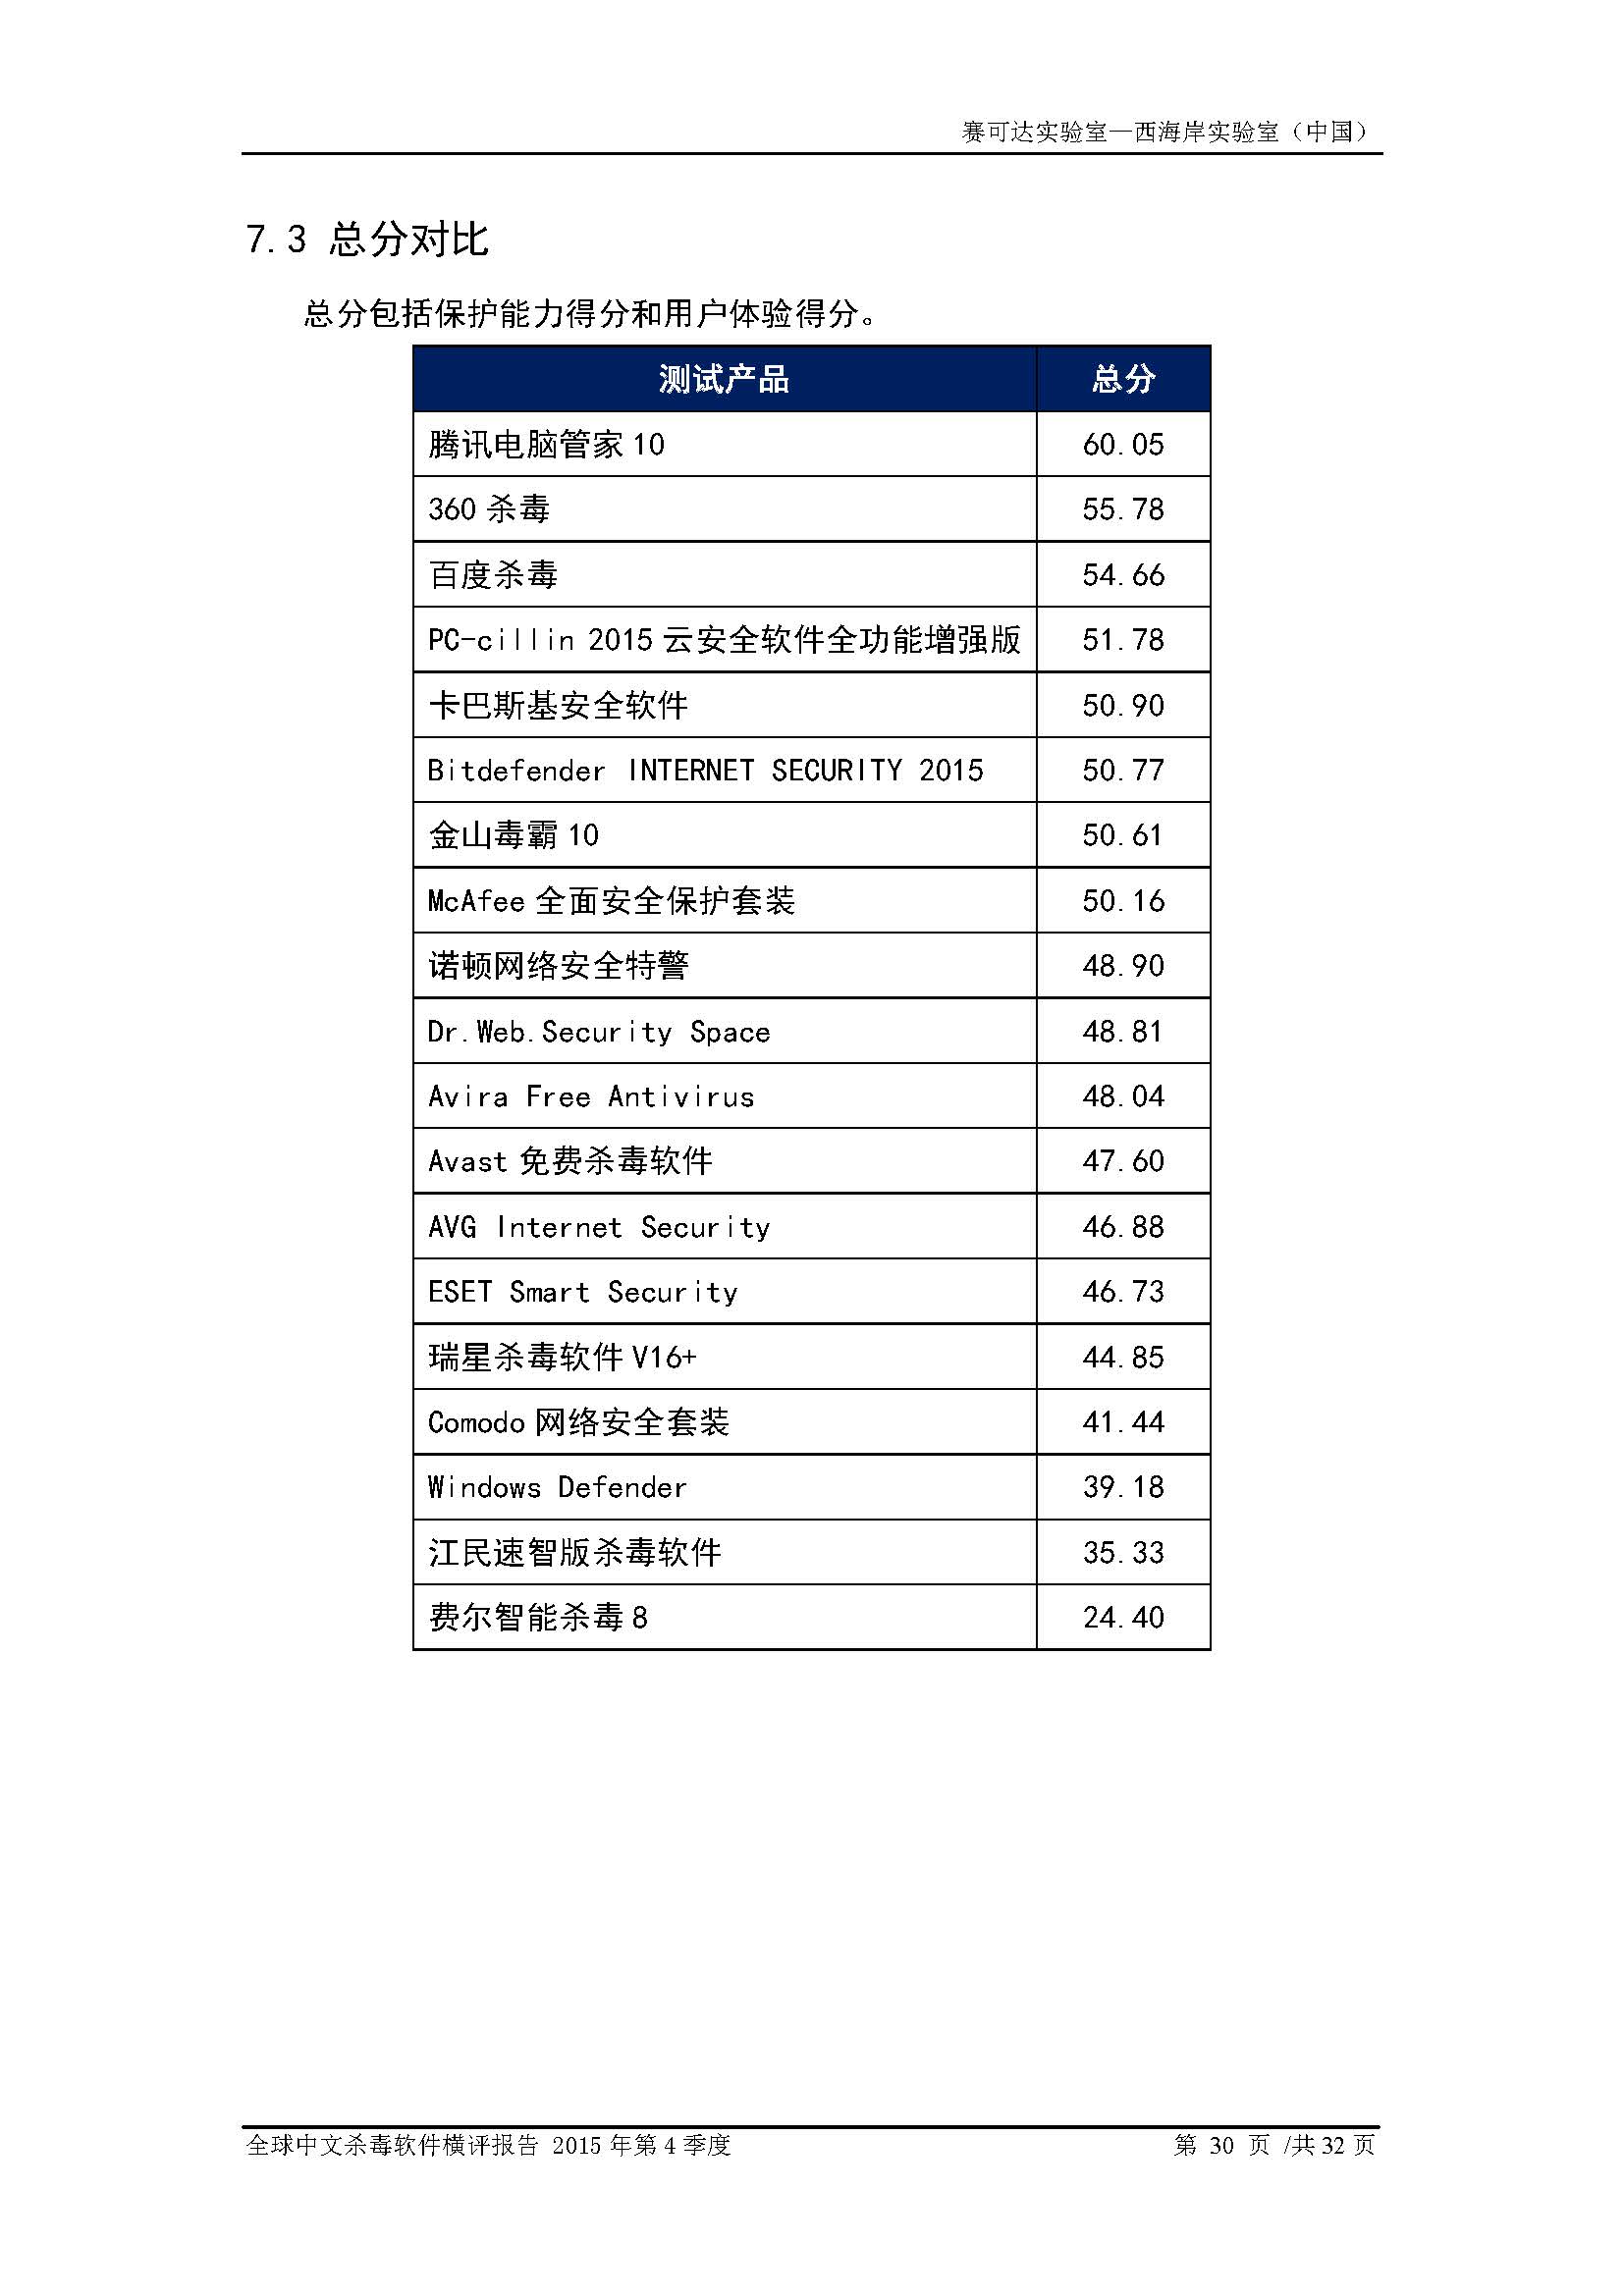 中文PC杀毒软件横评测试报告- Windows 8.1【中文版】.pdf (_Page_32.jpg